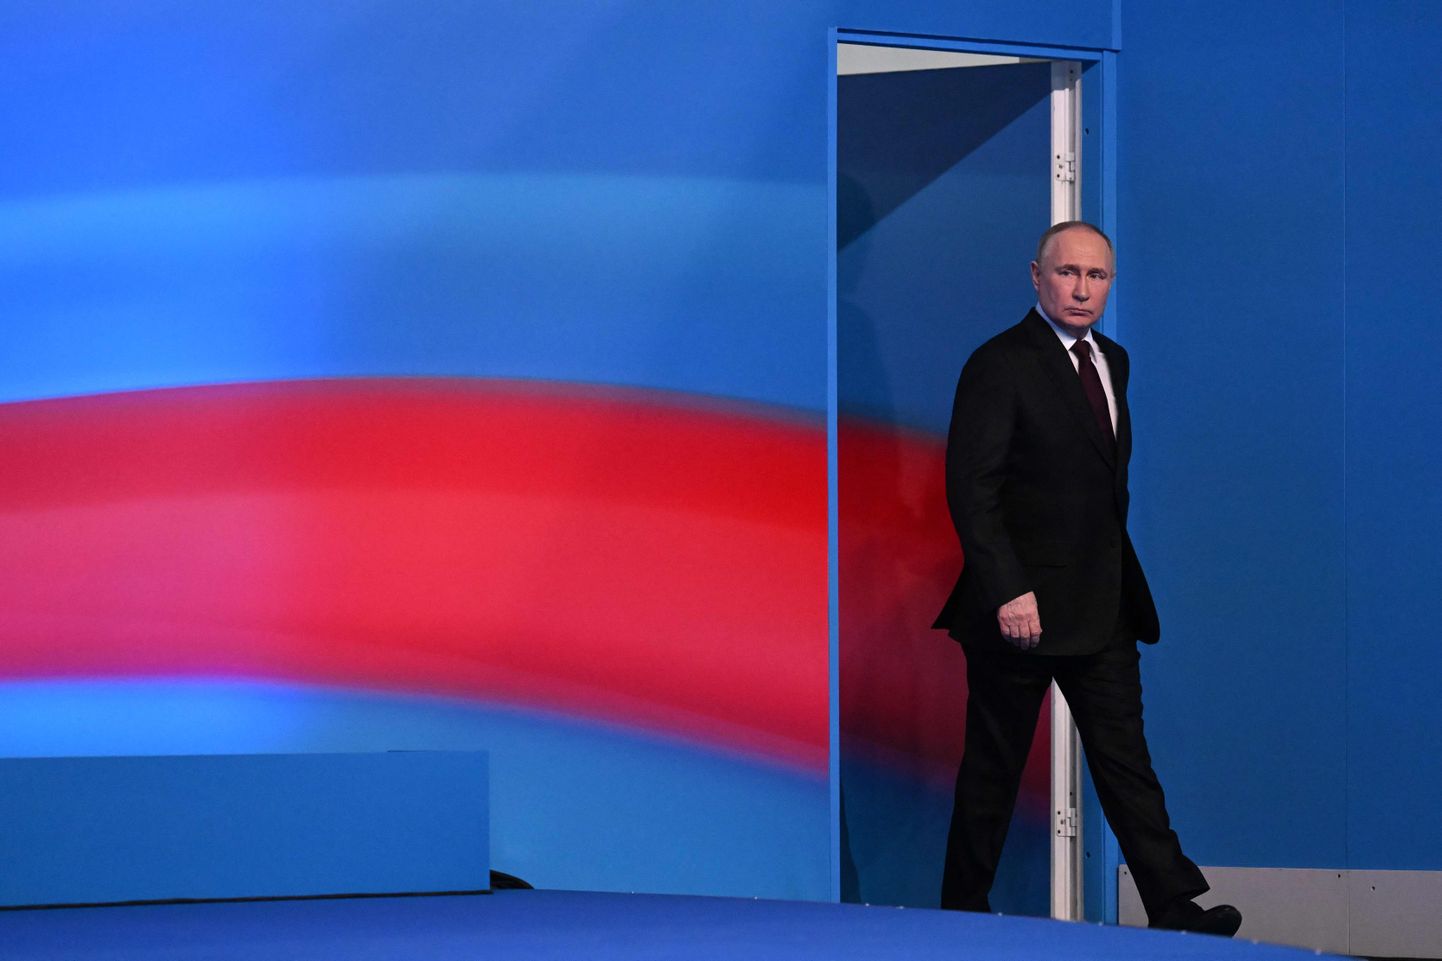 Vladimir Putin lasi oma ametiaega pikendada protsessi käigus, mida demokraatlikes riikides valimisteks nimetatakse. Demokraatliku maailma hinnangul olid need võltsitud, kuid Kreml teab asjade tegelikku seisu ehk tegelikku ja hinnangulist opositsiooni osakaalu. Putin kohtumas meediaga 18. märtsil 2024 Moskvas.